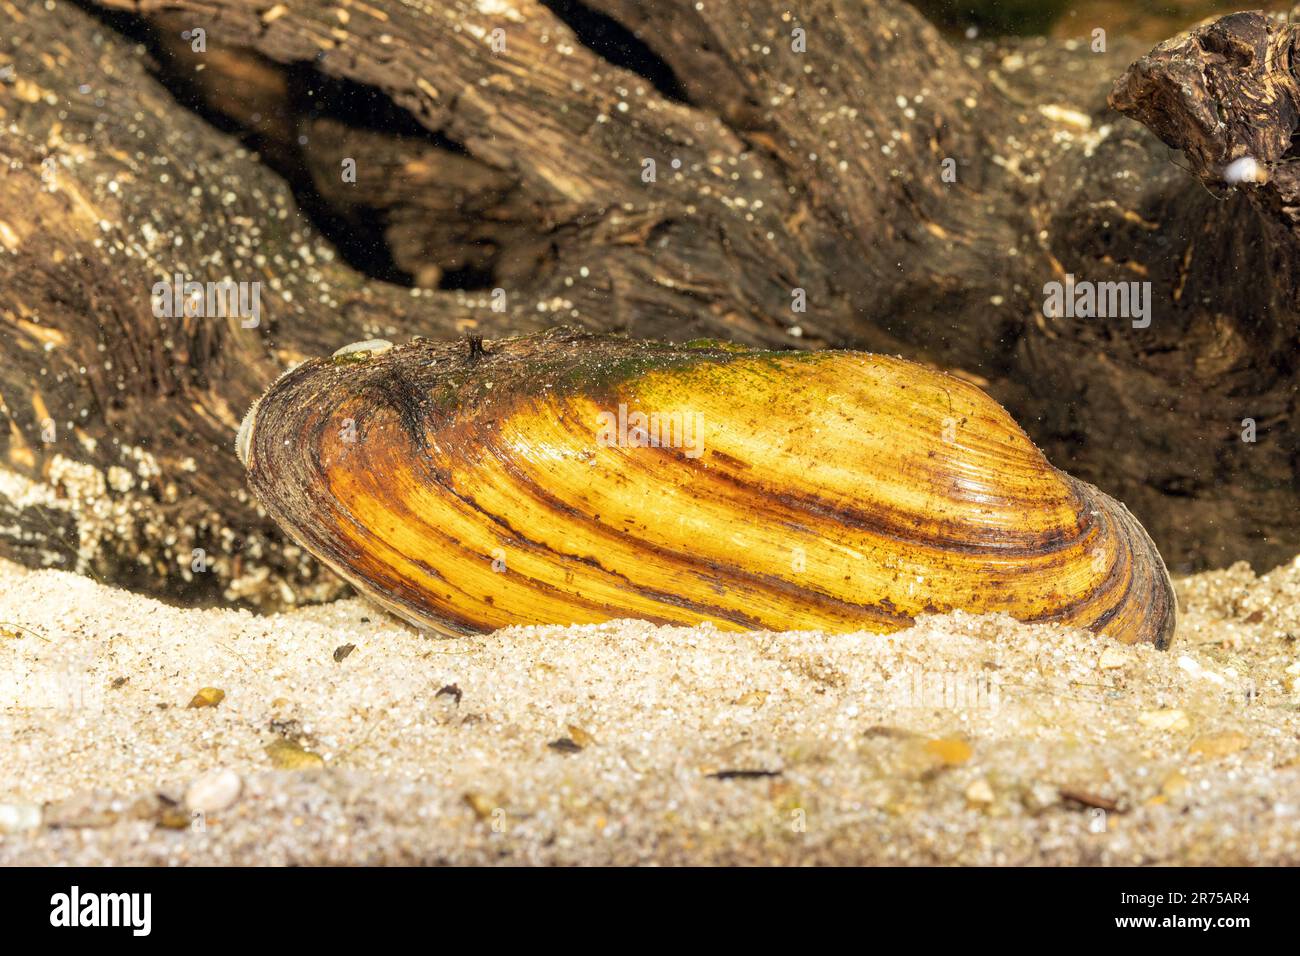 Malermuschel (Unio pictorum, Pollicepes pictorum), unter Wasser, Deutschland Stockfoto